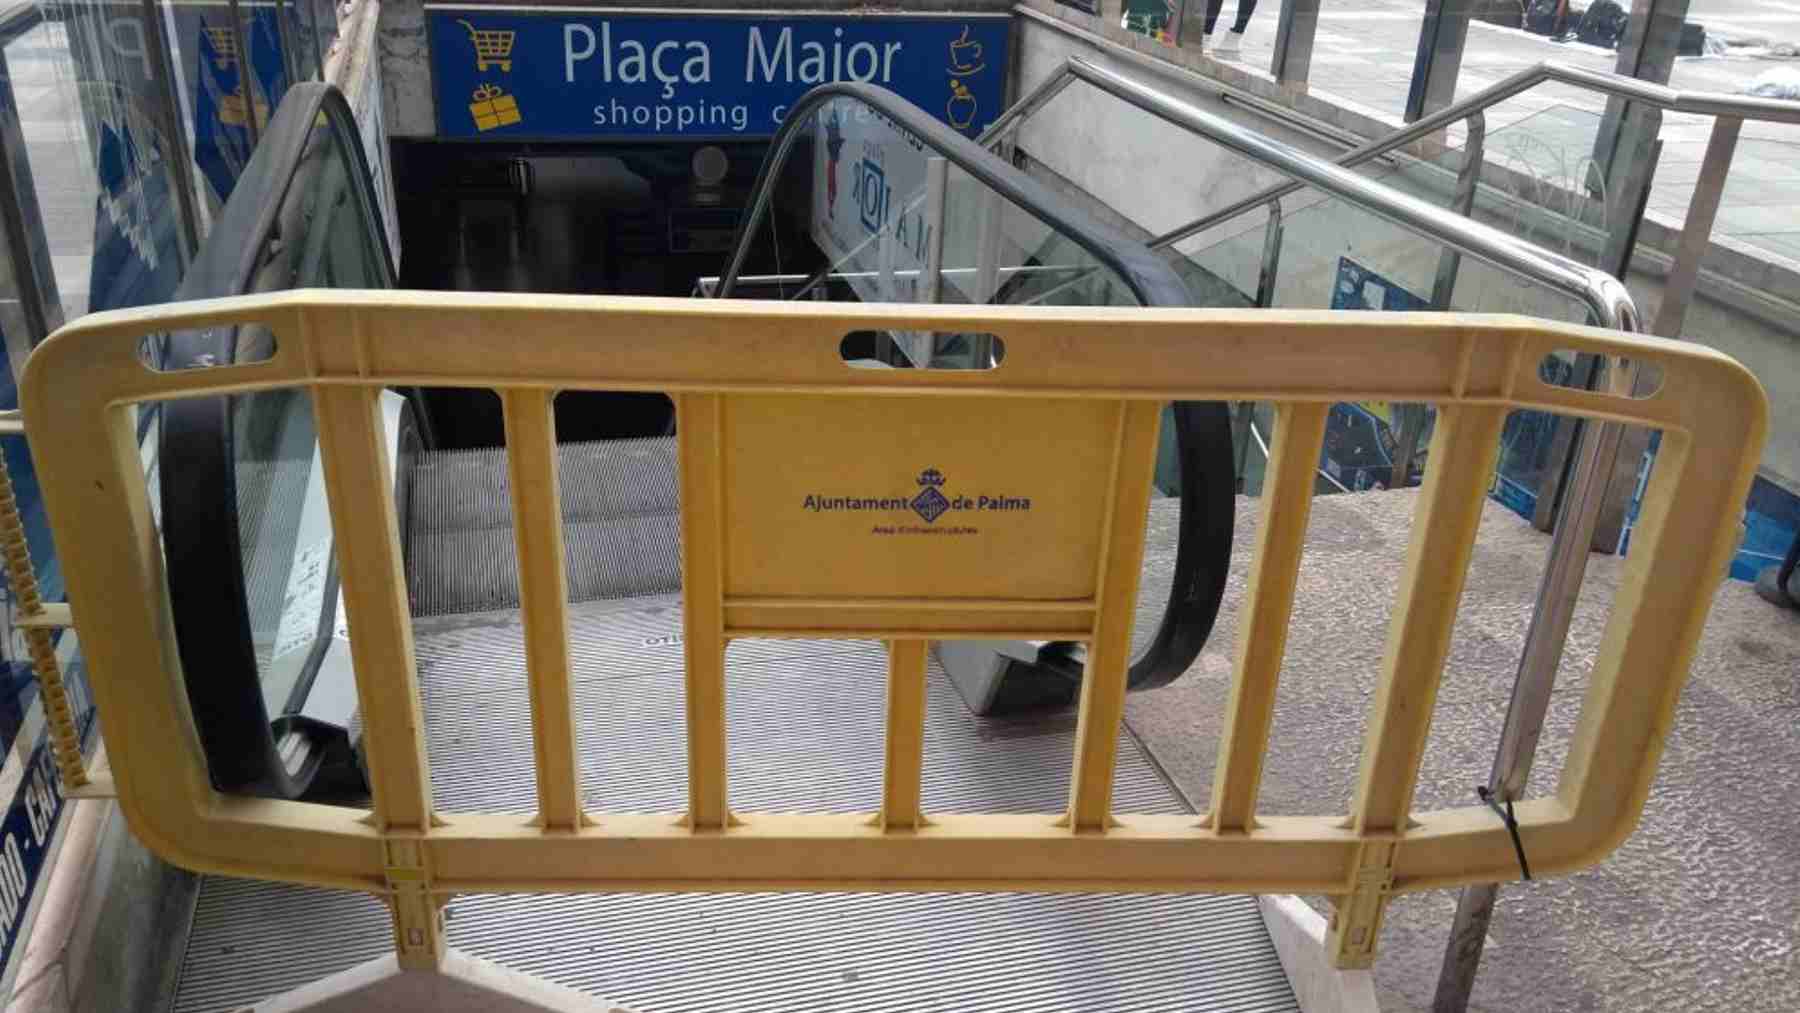 Imagen de uno de los accesos a las cerradas galerías comerciales de la Plaza Mayor de Palma.